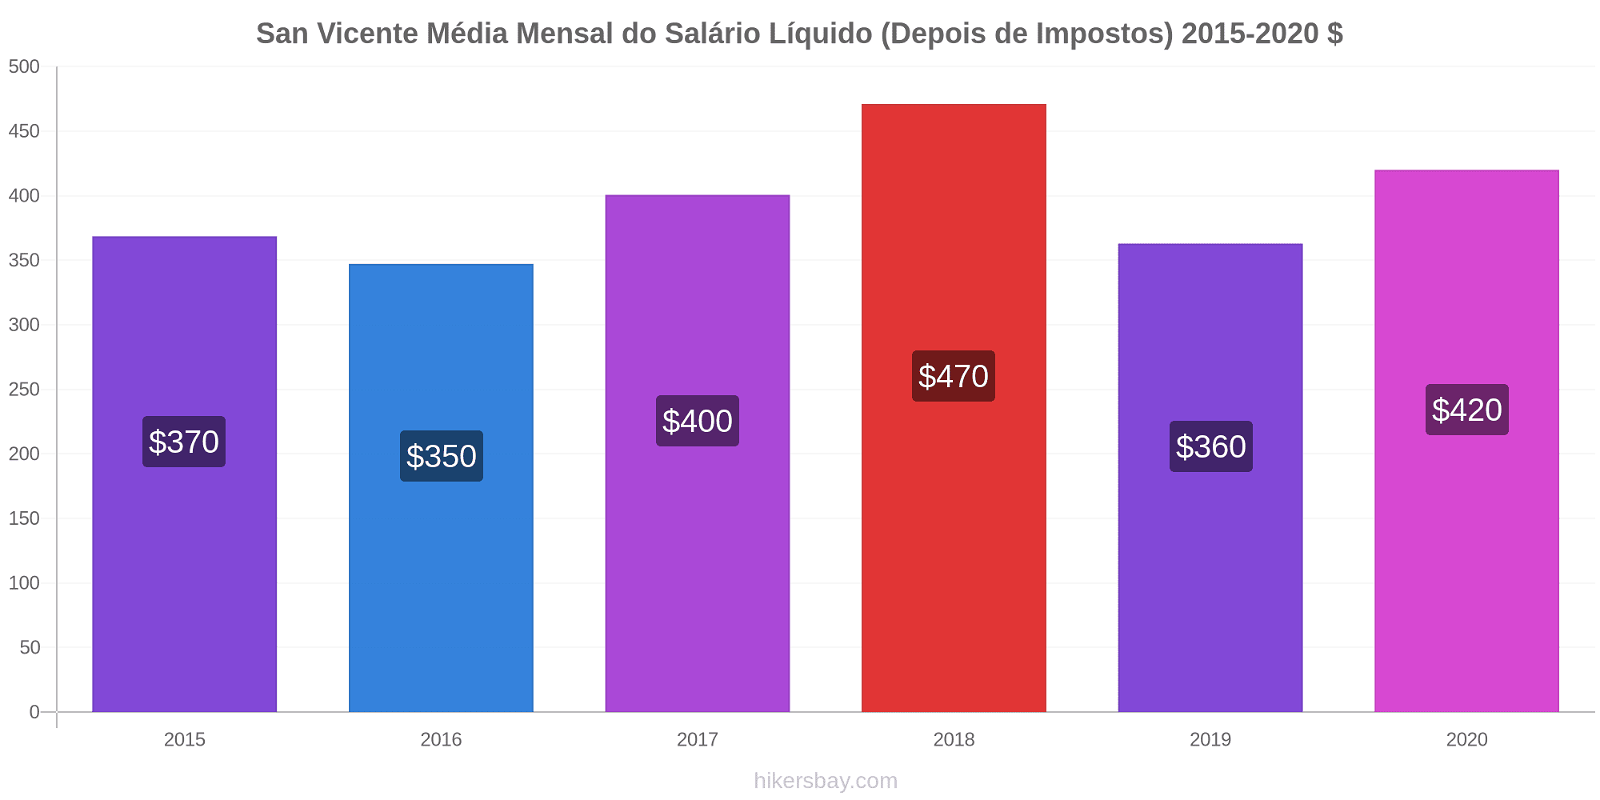 San Vicente variação de preço Salário líquido mensal médio (depois de impostos) hikersbay.com